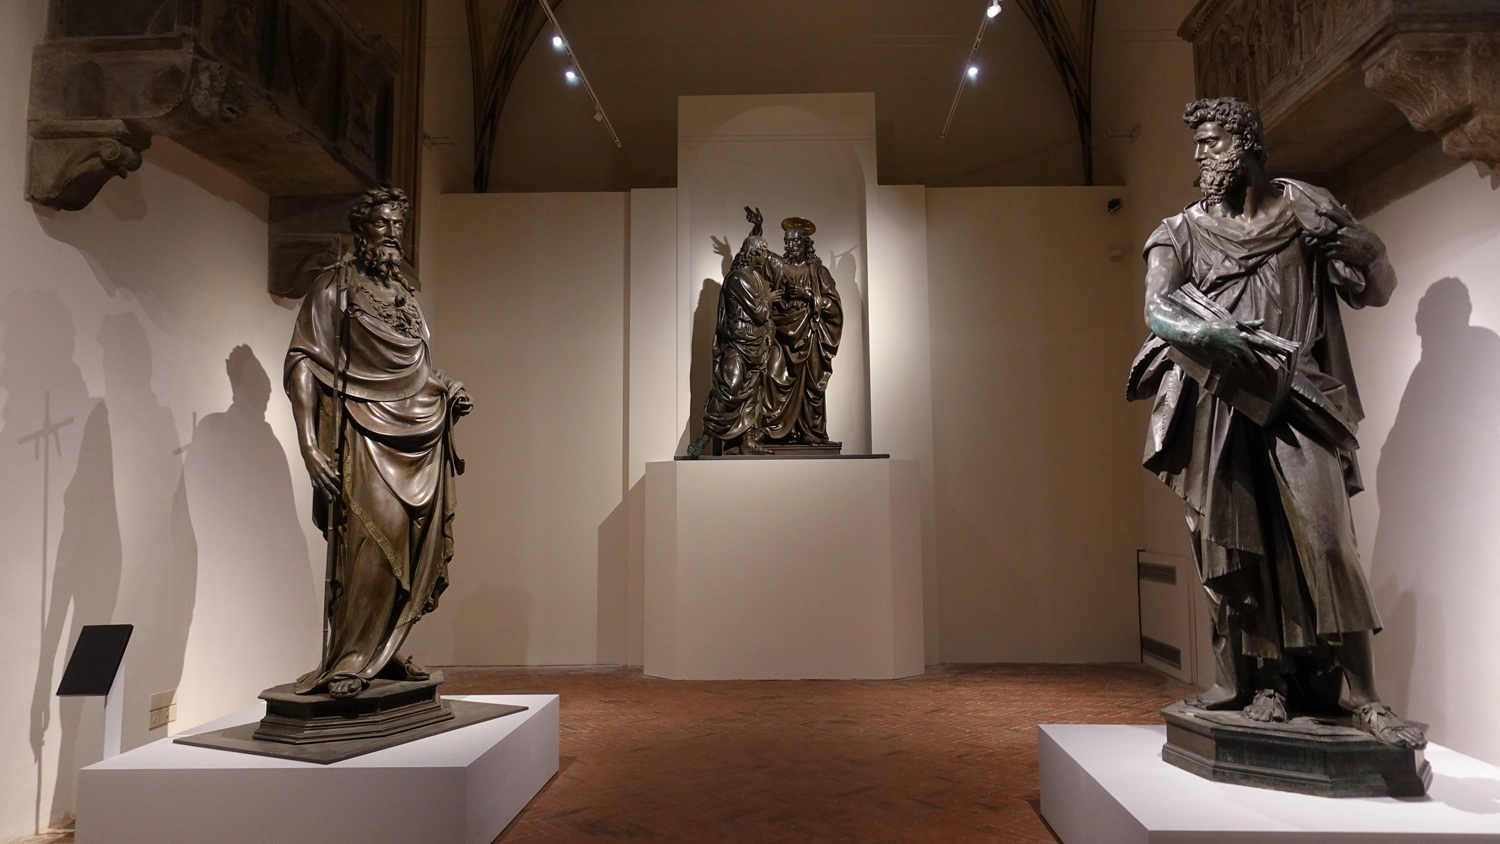 Le tre statue in mostra